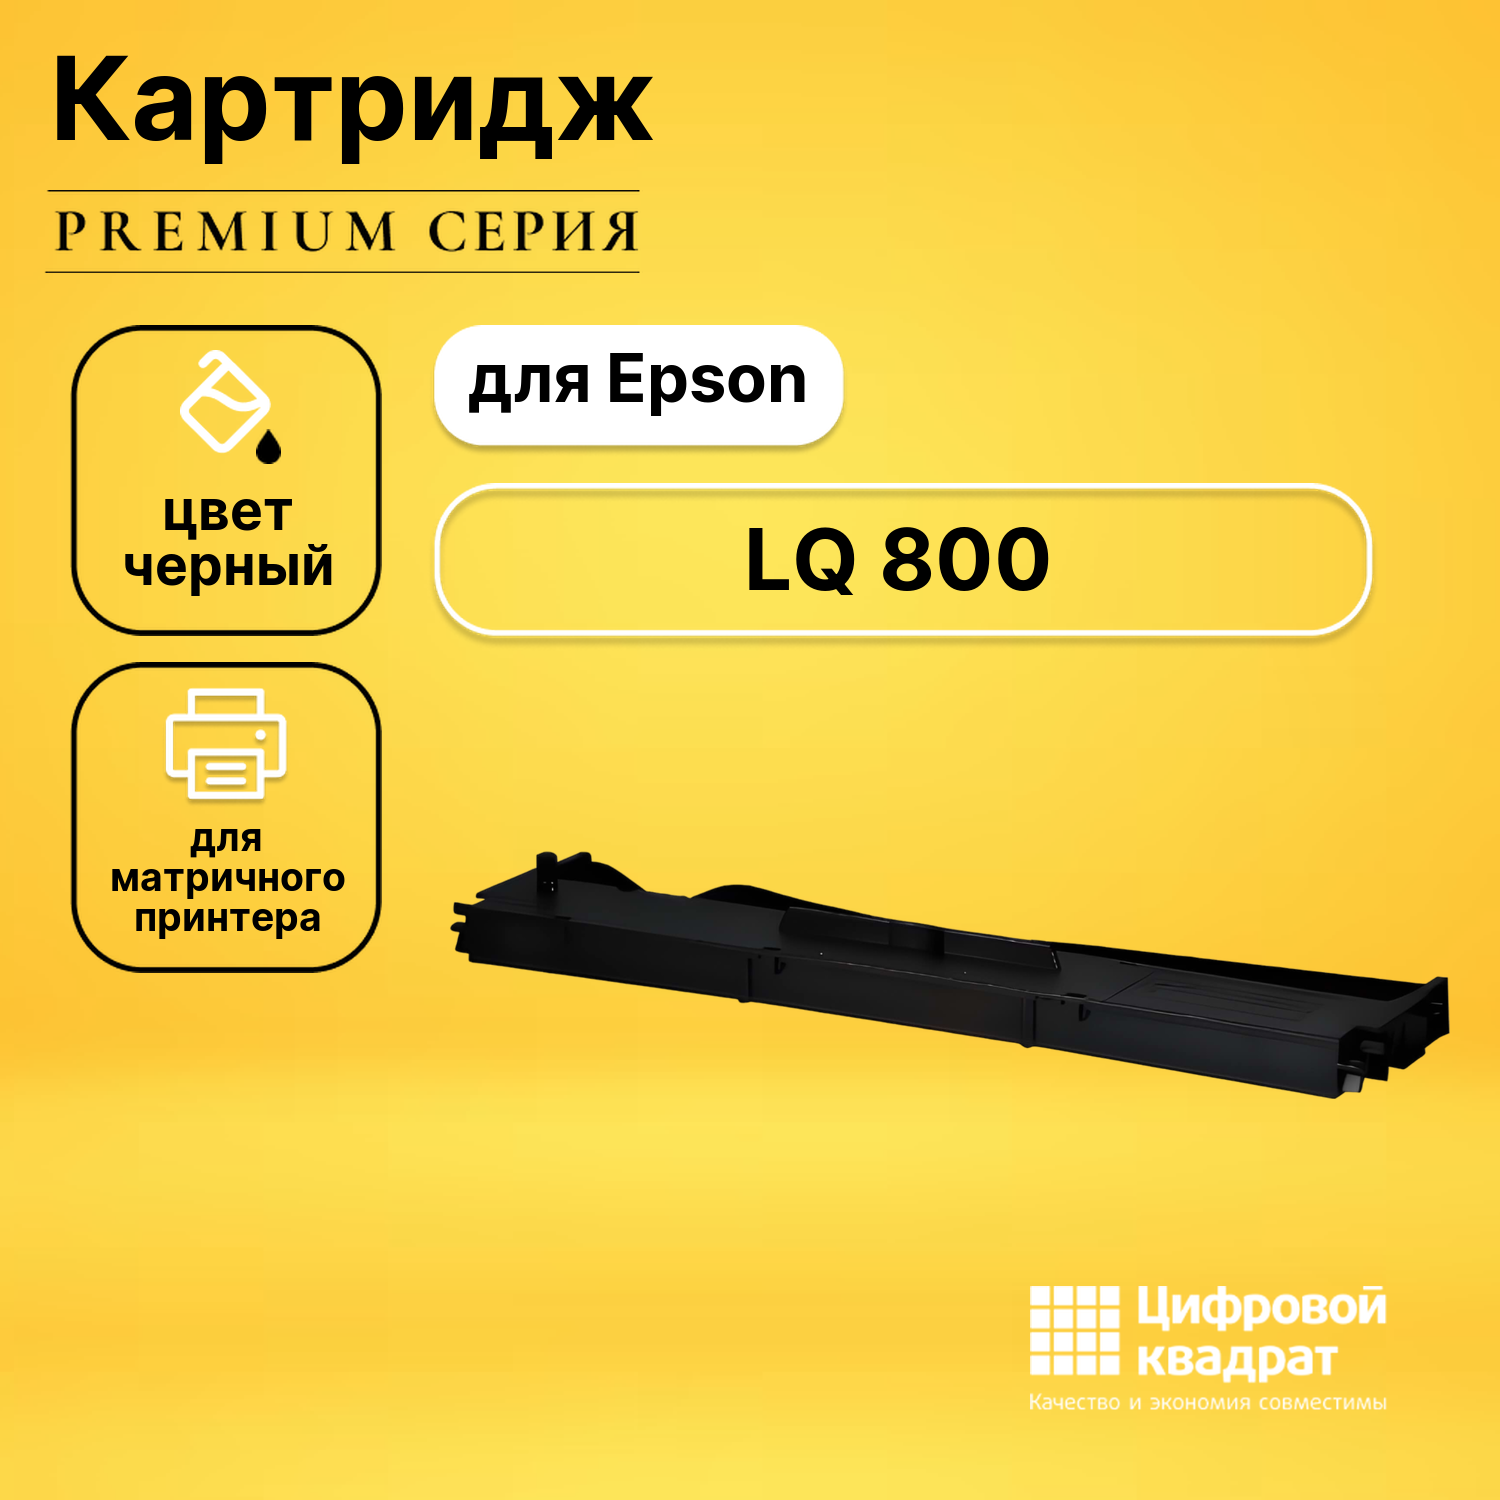 Риббон-картридж DS для Epson LQ 800 совместимый